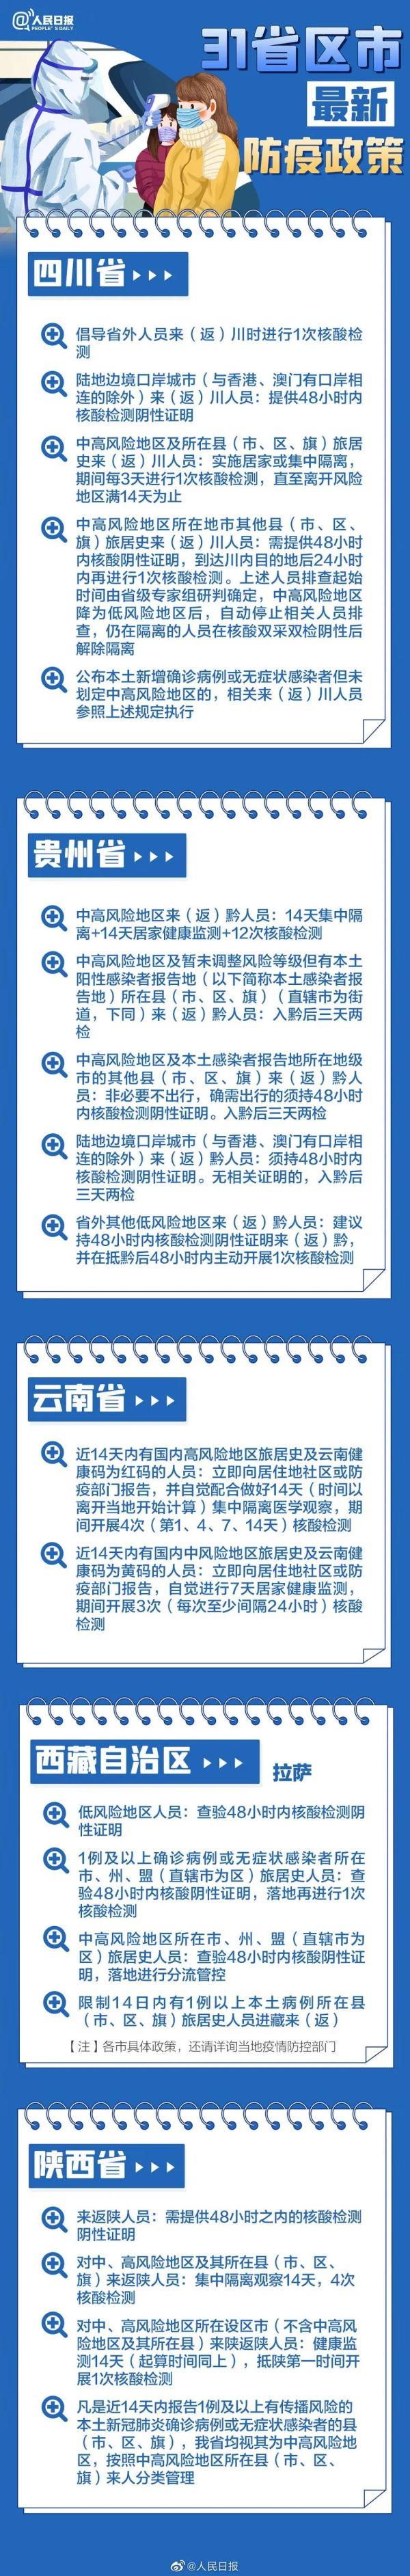 贵州2021年成人高考考试时间